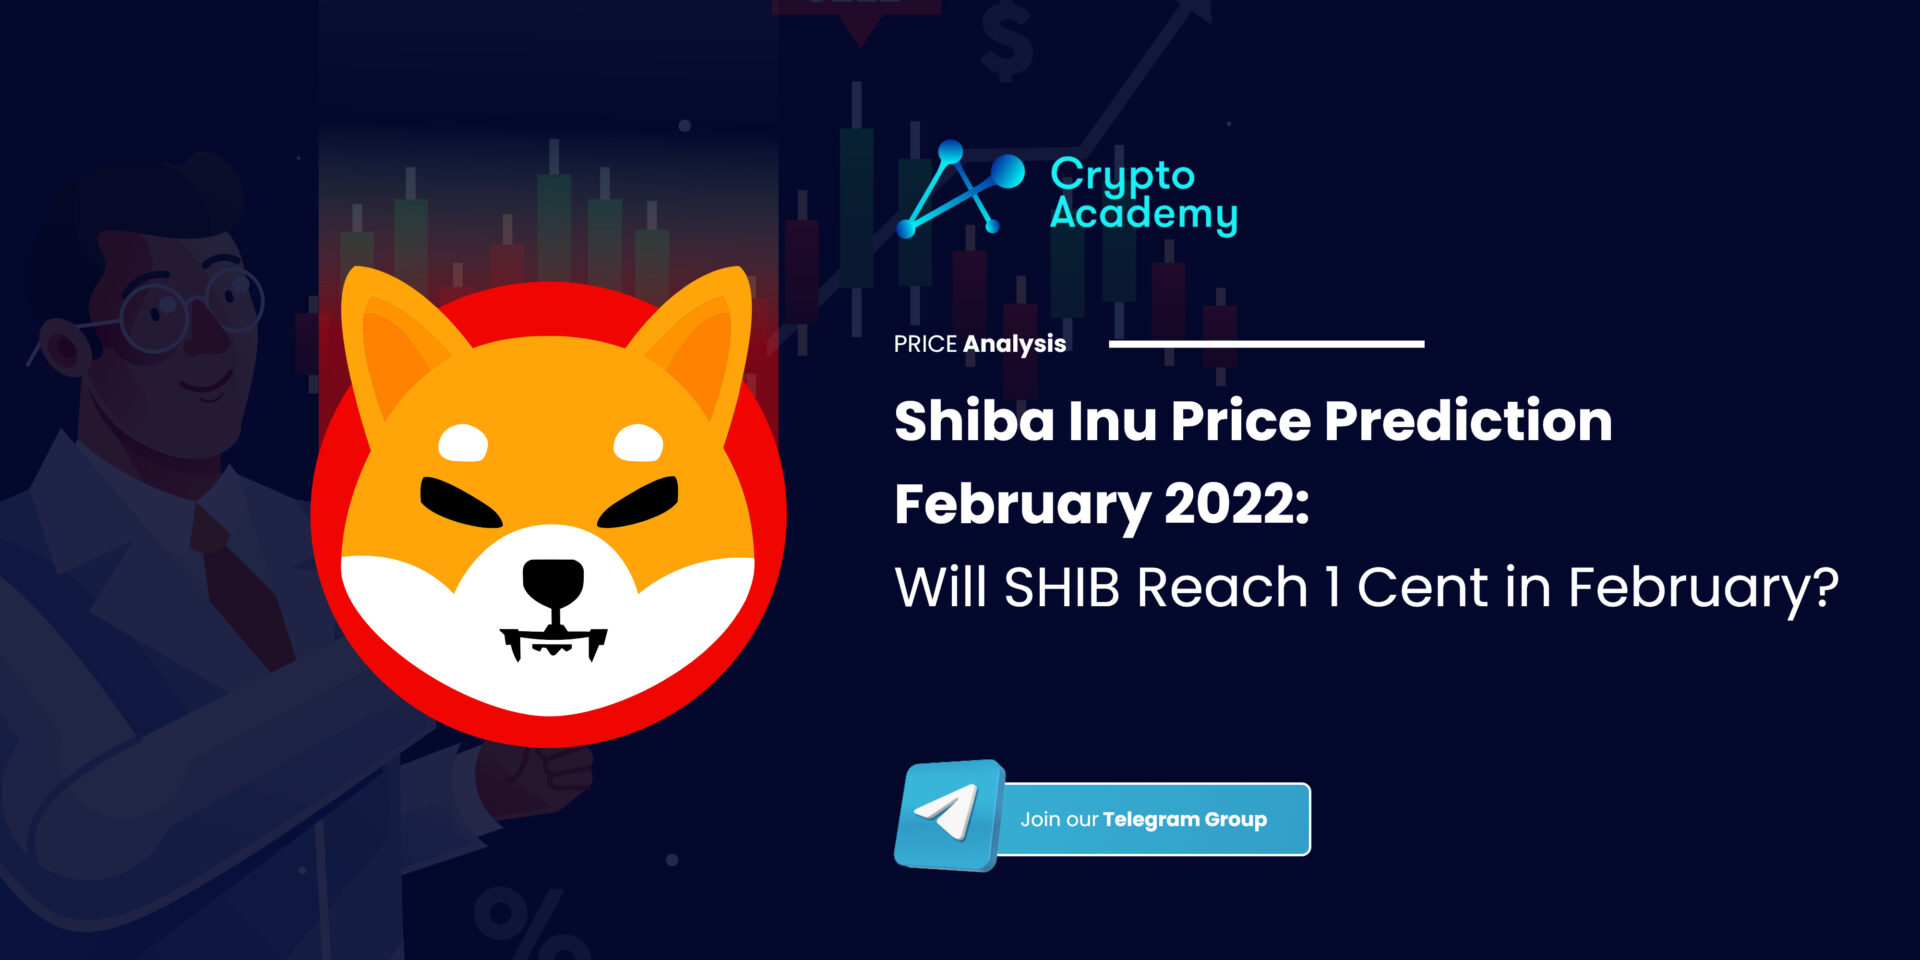 Shiba Inu Price Prediction February 2022: Will SHIB Reach 1 Cent in February?